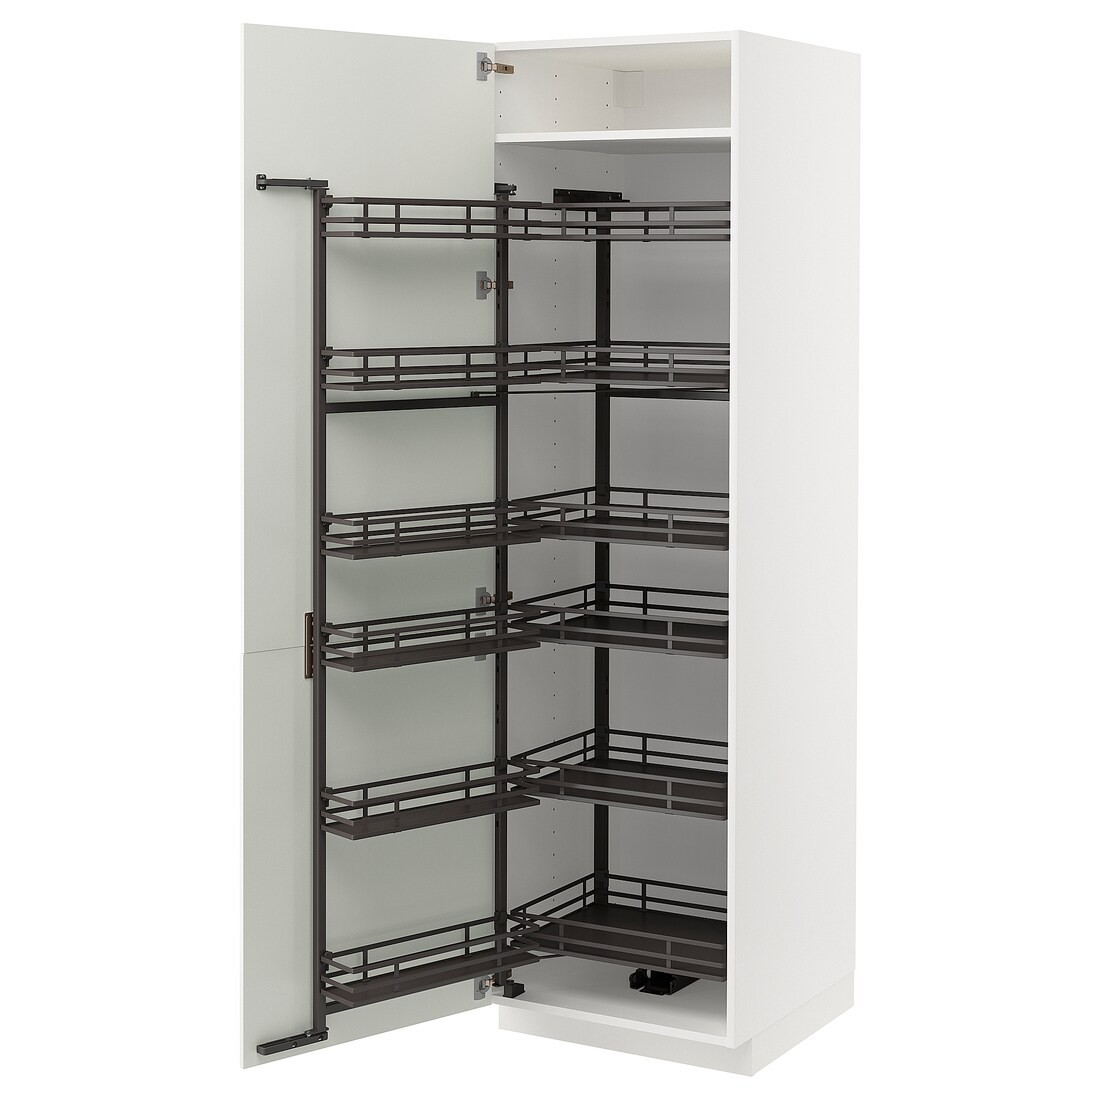 METOD МЕТОД Высокий шкаф с выдвижной кладовой, белый / Bodbyn кремовый, 60x60x200 см